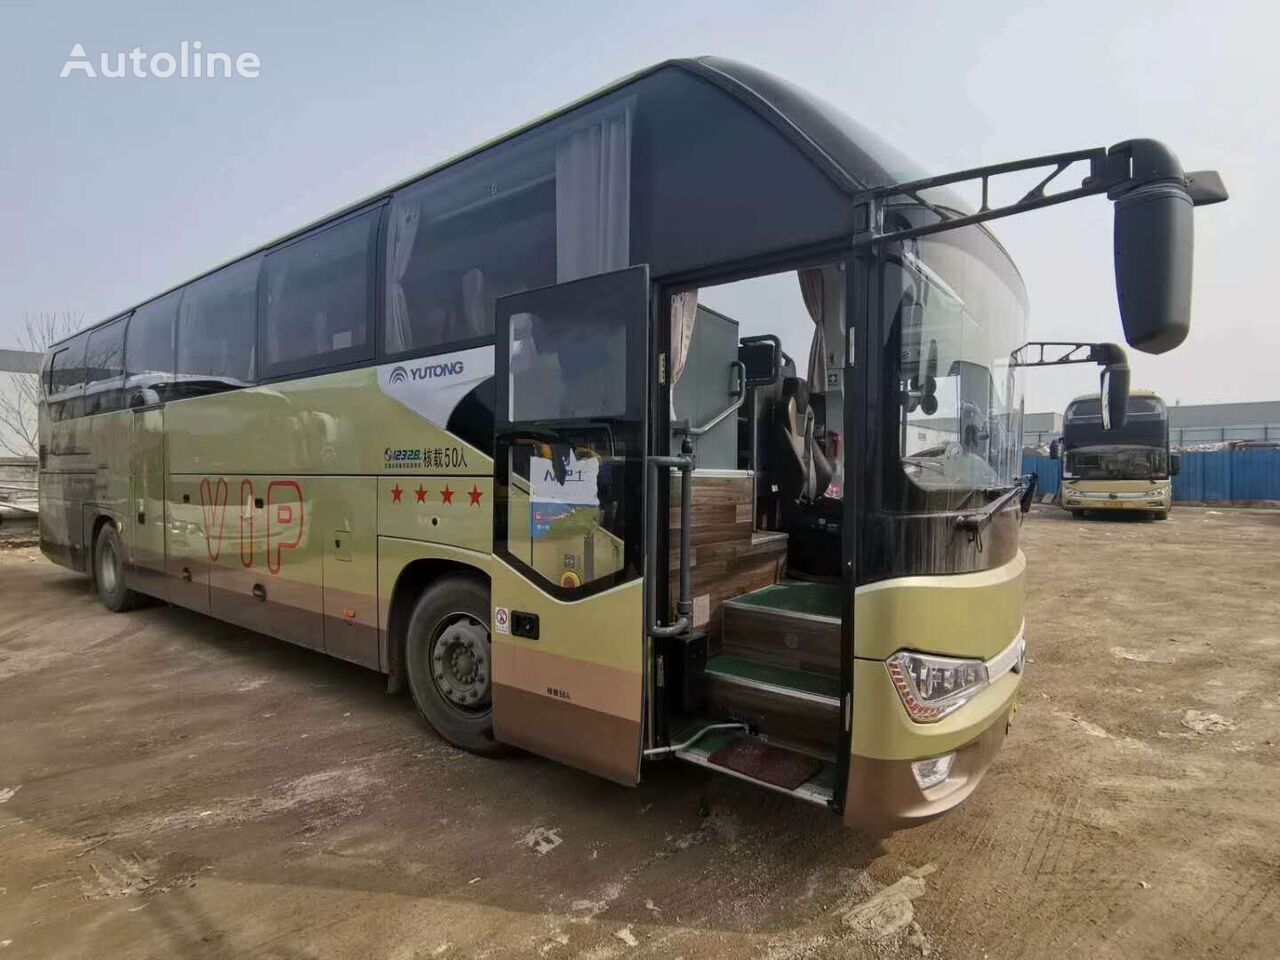 Yutong turistbuss